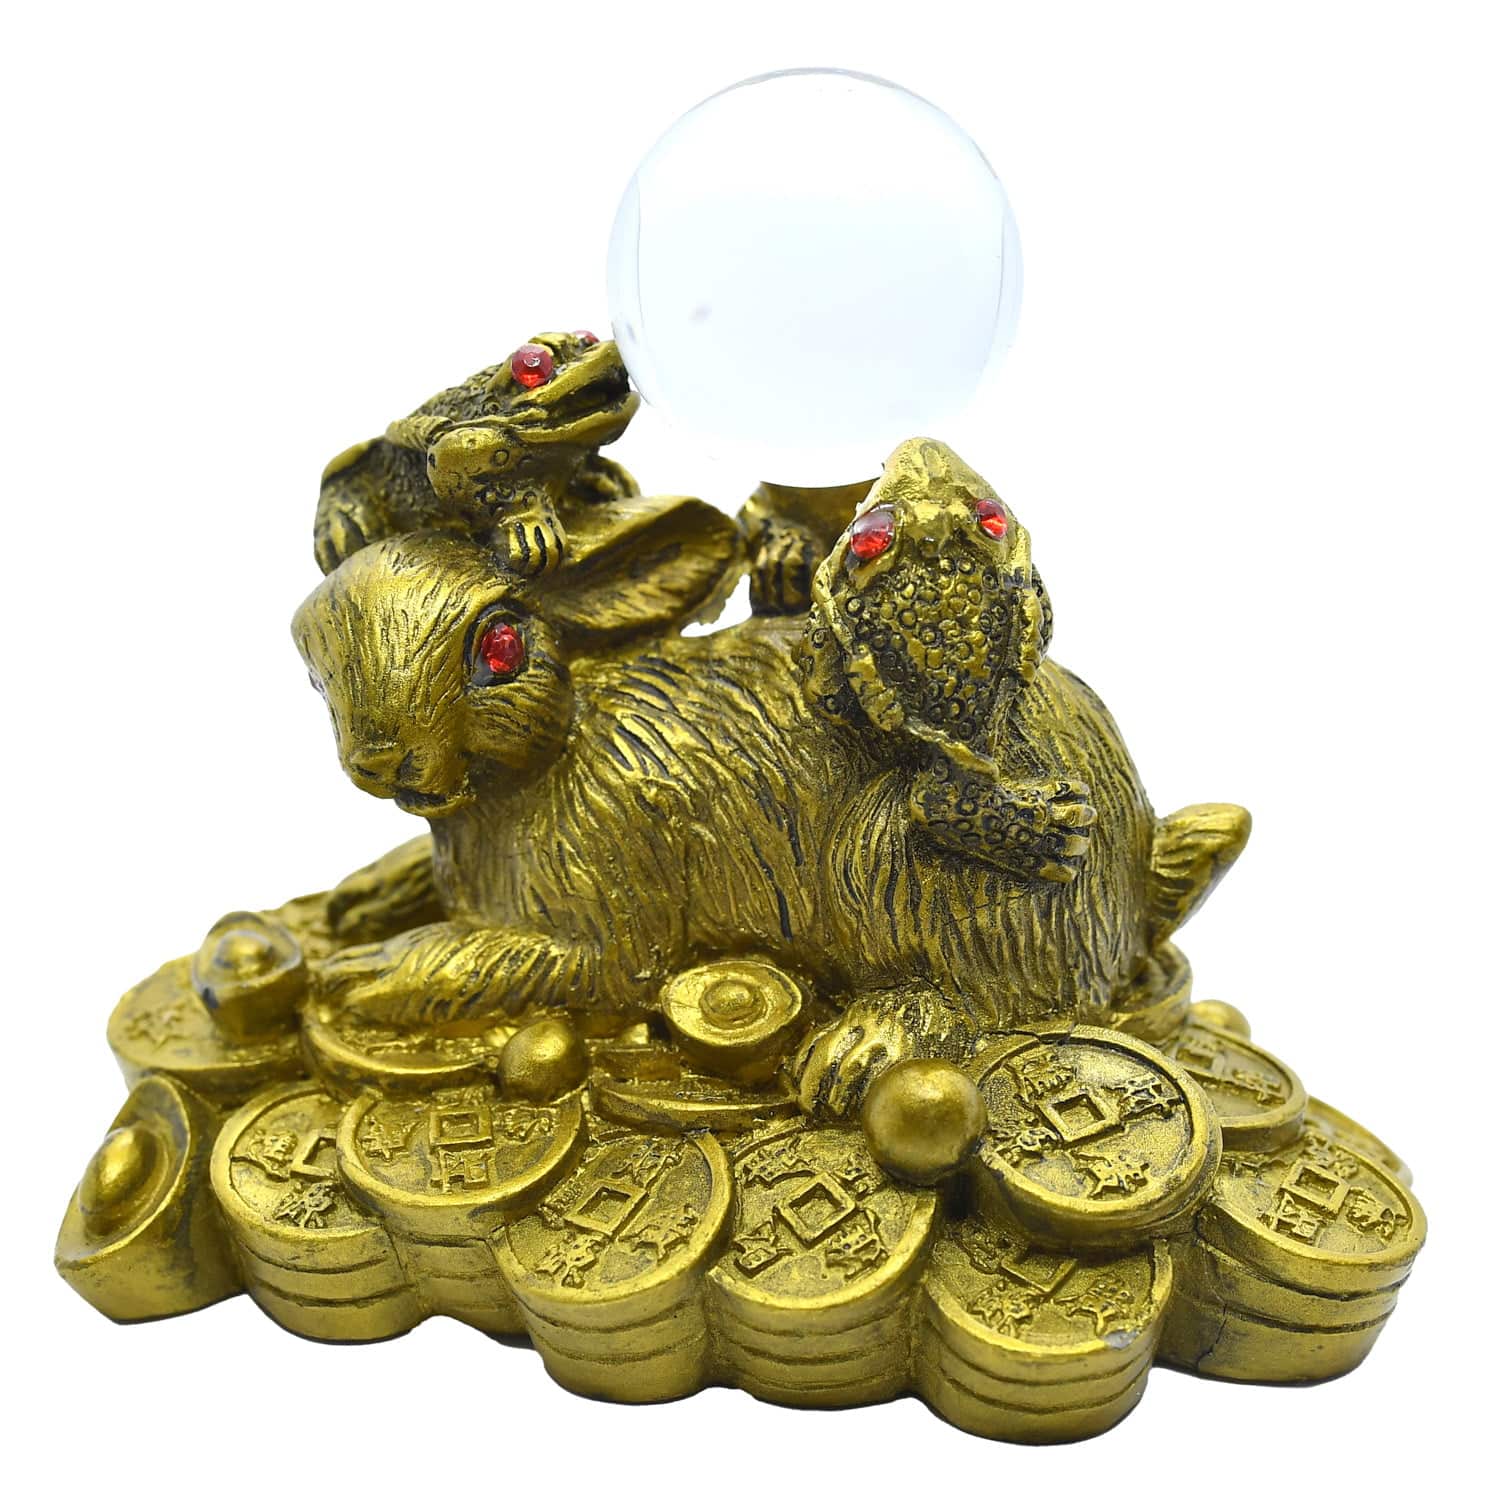 Iepure auriu pe monede cu trei broascute norocoase pe spate – model 1 – 2023